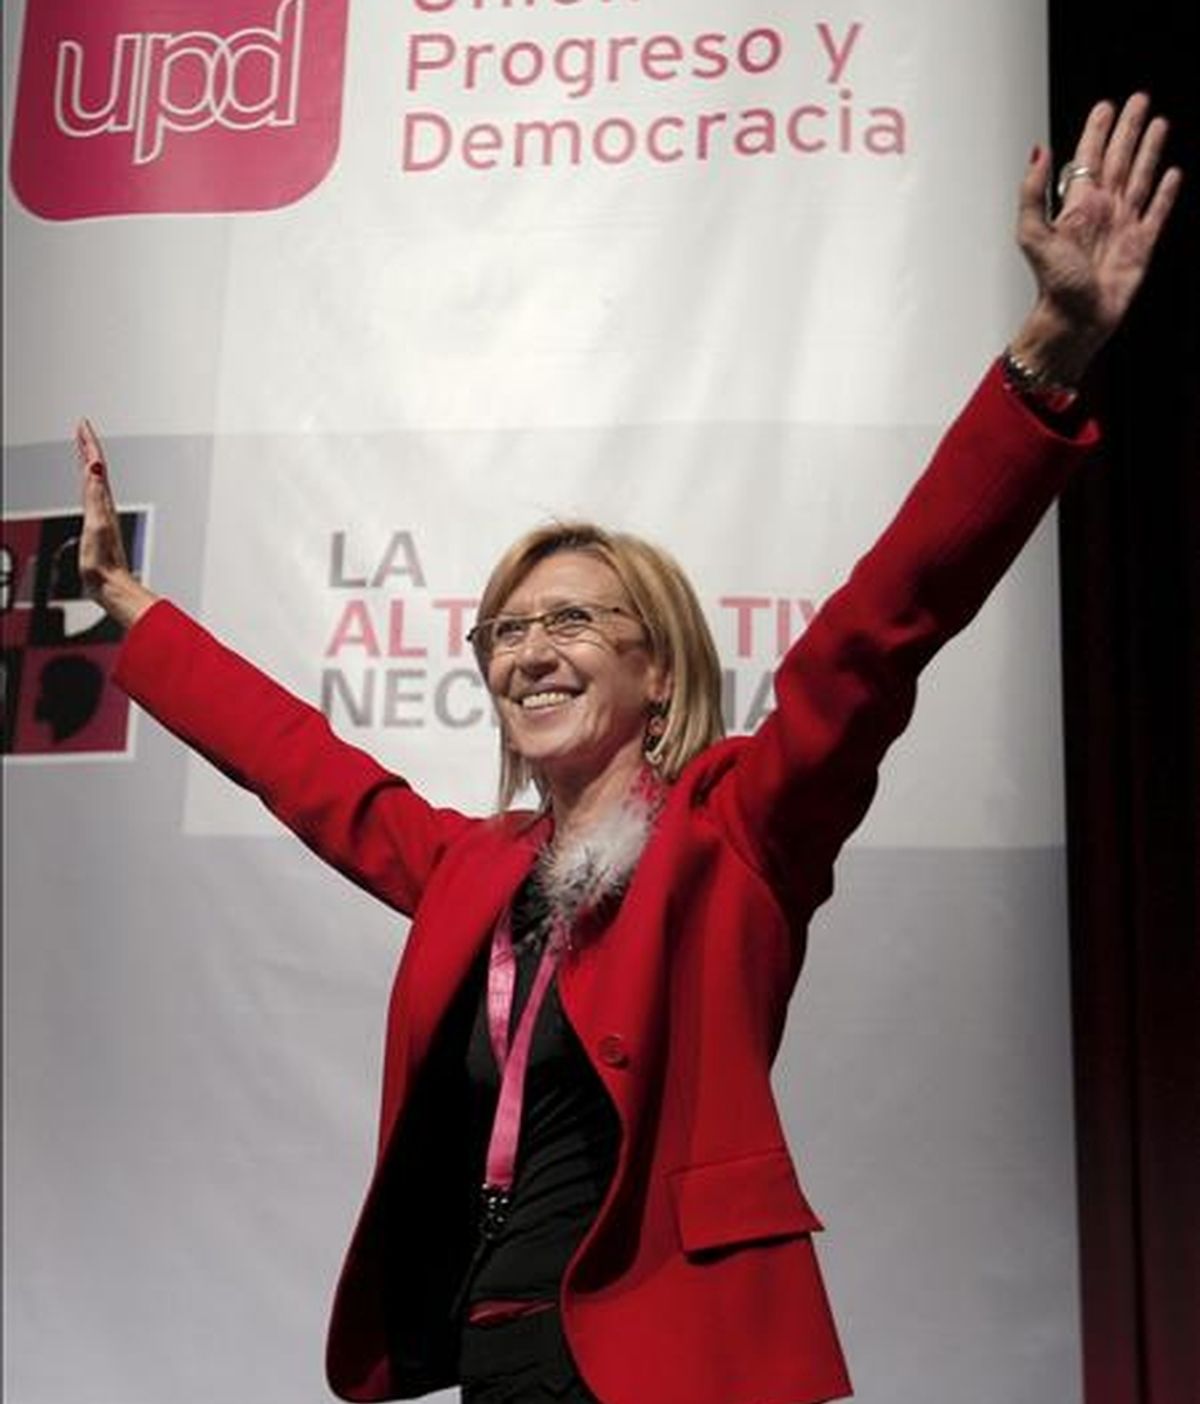 Rosa Díez levanta los brazos en señal de agradecimiento tras ser elegida en el Congreso de Unión Progreso y Democracia (UPyD) celebrado hoy en Madrid portavoz del Consejo de Dirección del partido con el 81 por ciento de los votos. EFE